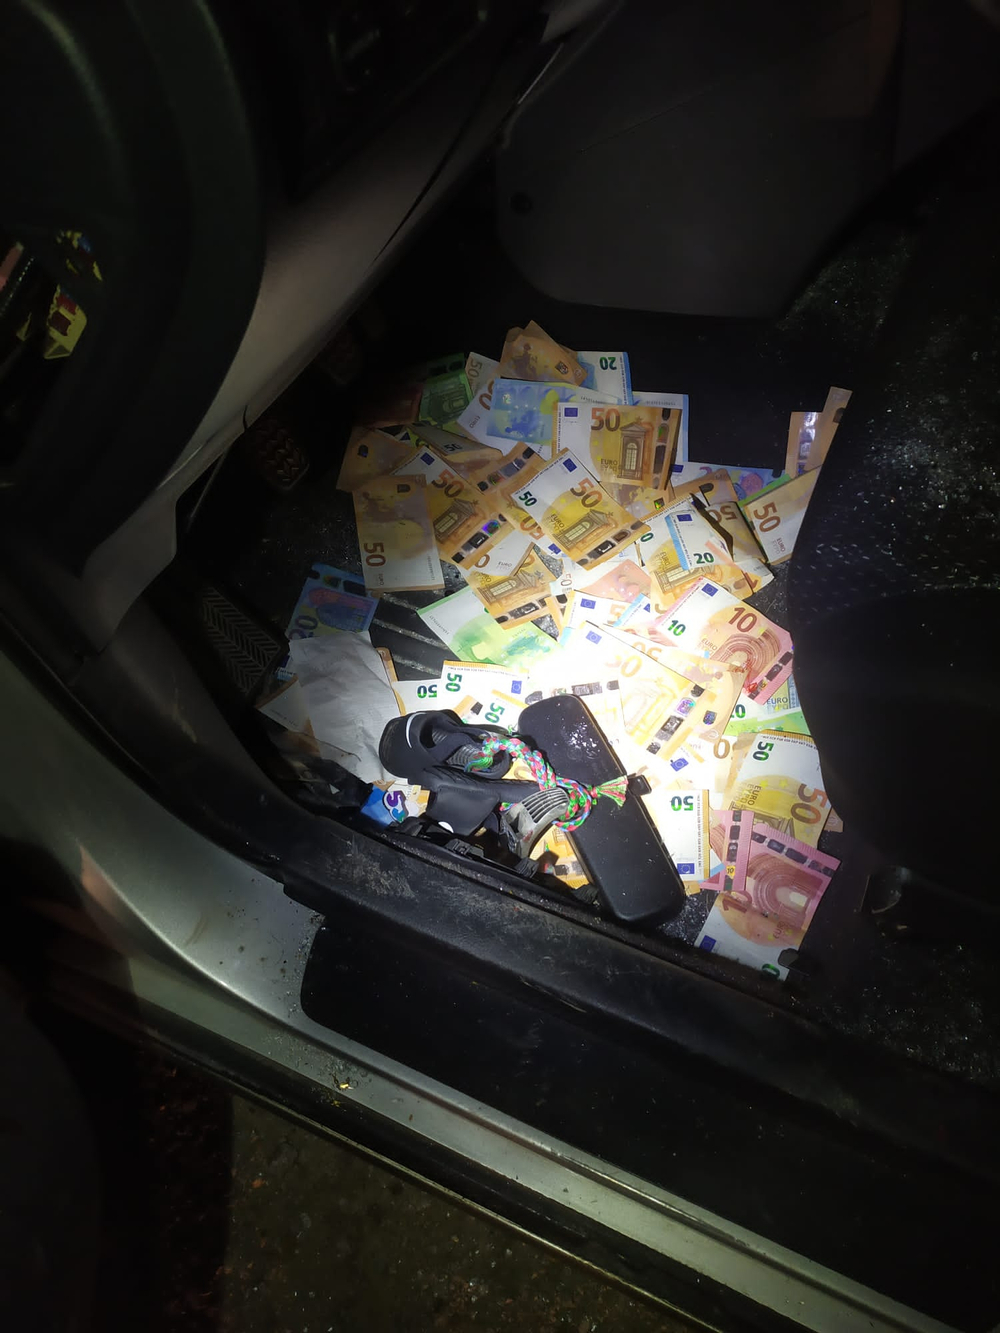 En el interior del vehículo se encontraron 5.000 euros destinados supuestamente al regalo.